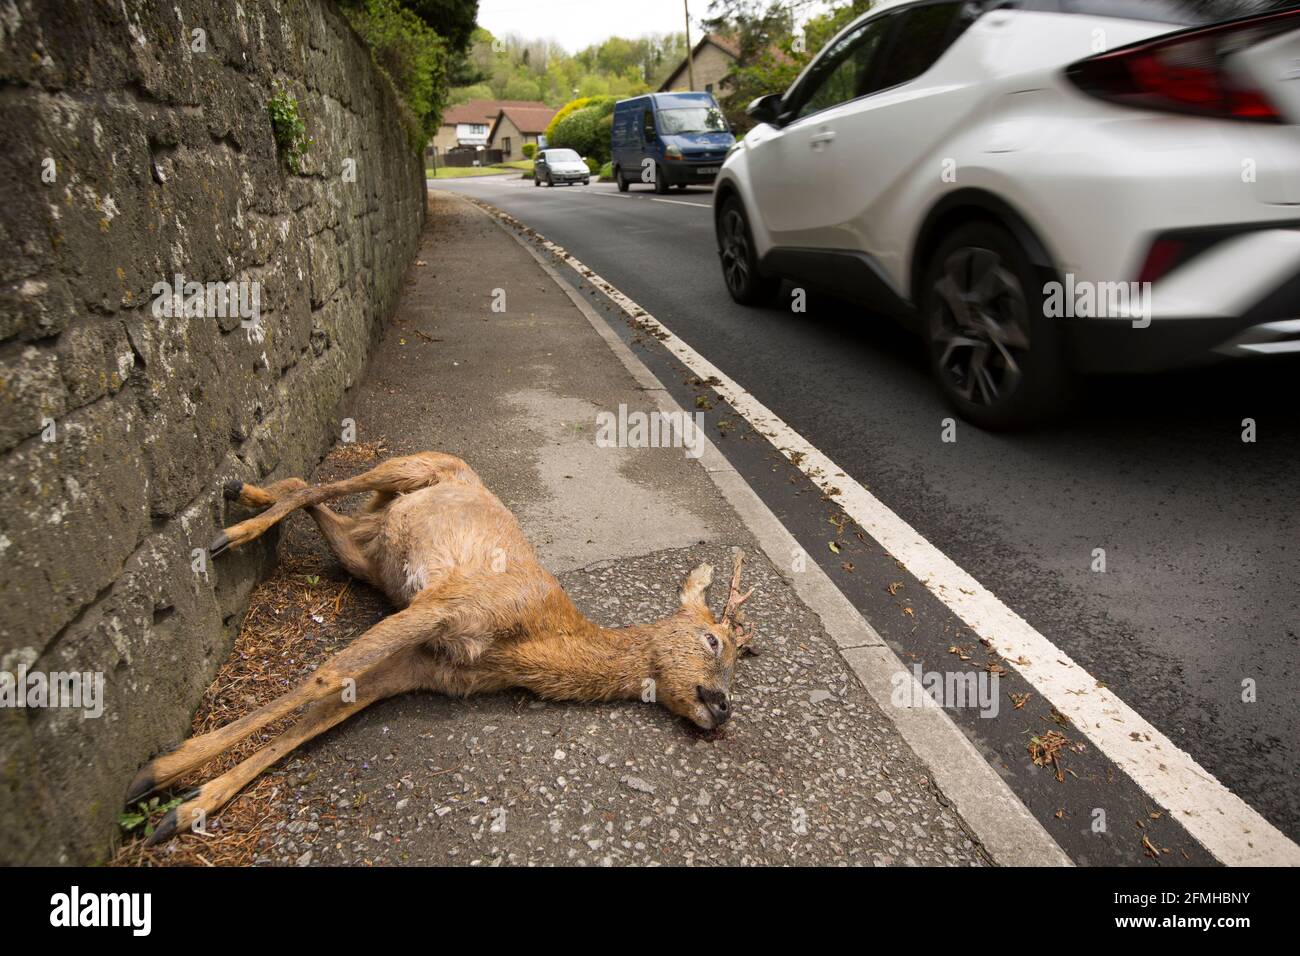 Un ciervo muerto, Capreolus capreolus, tumbado en el pavimento cerca de la vivienda después de ser golpeado por un vehículo. North Dorset Inglaterra GB Foto de stock